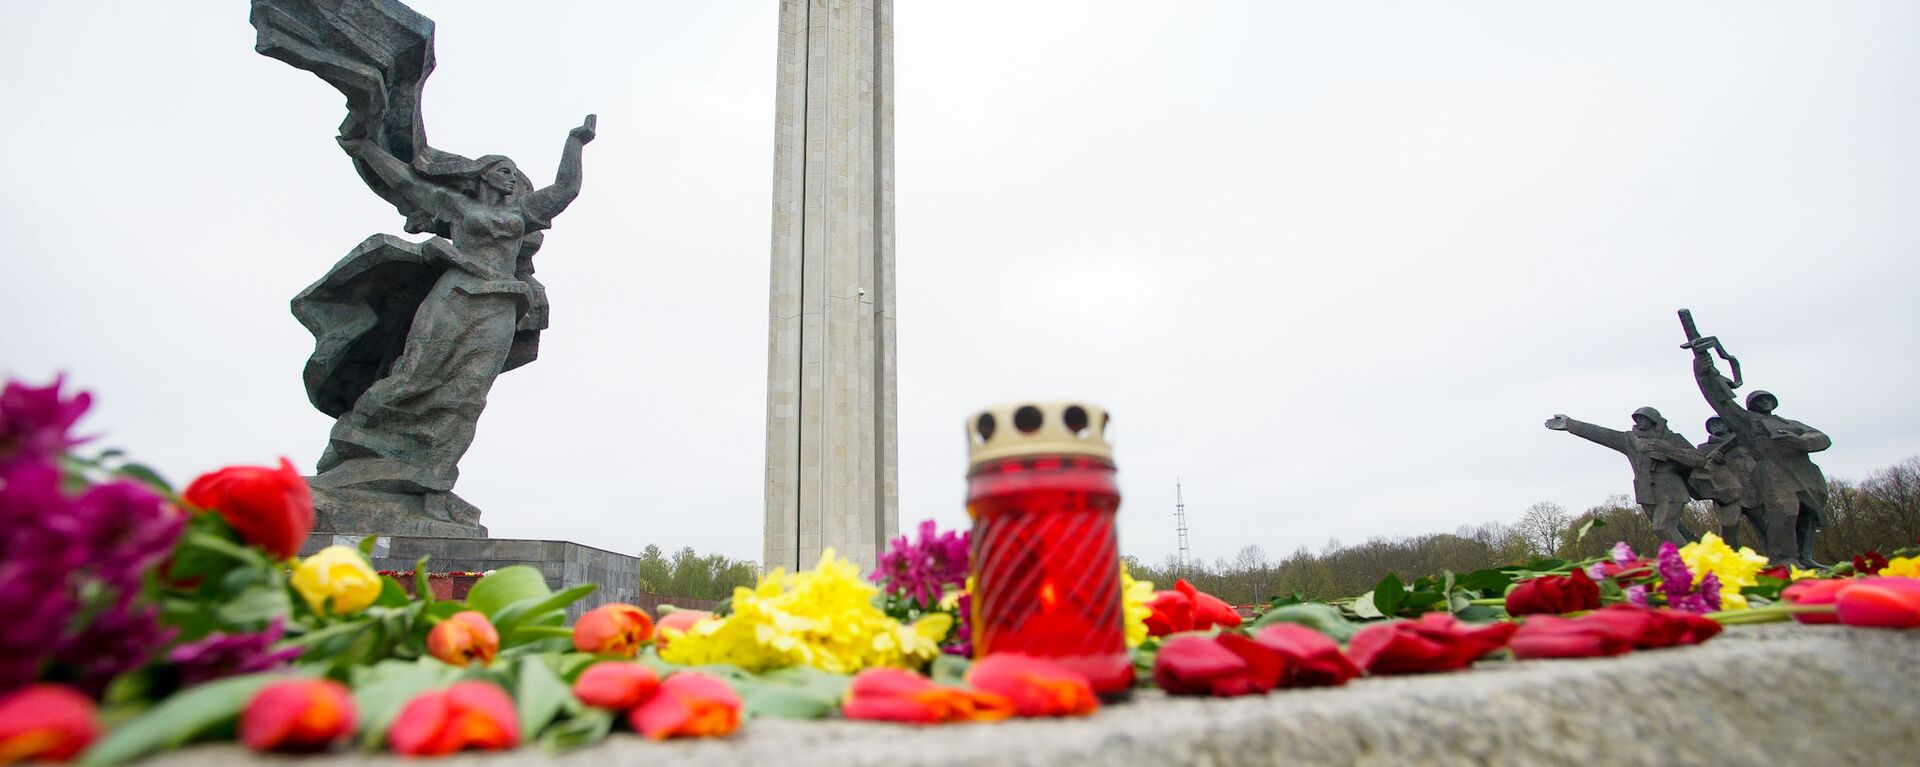 Цветы у памятника Освободителям в Риге 9 мая - Sputnik Латвия, 1920, 28.04.2021